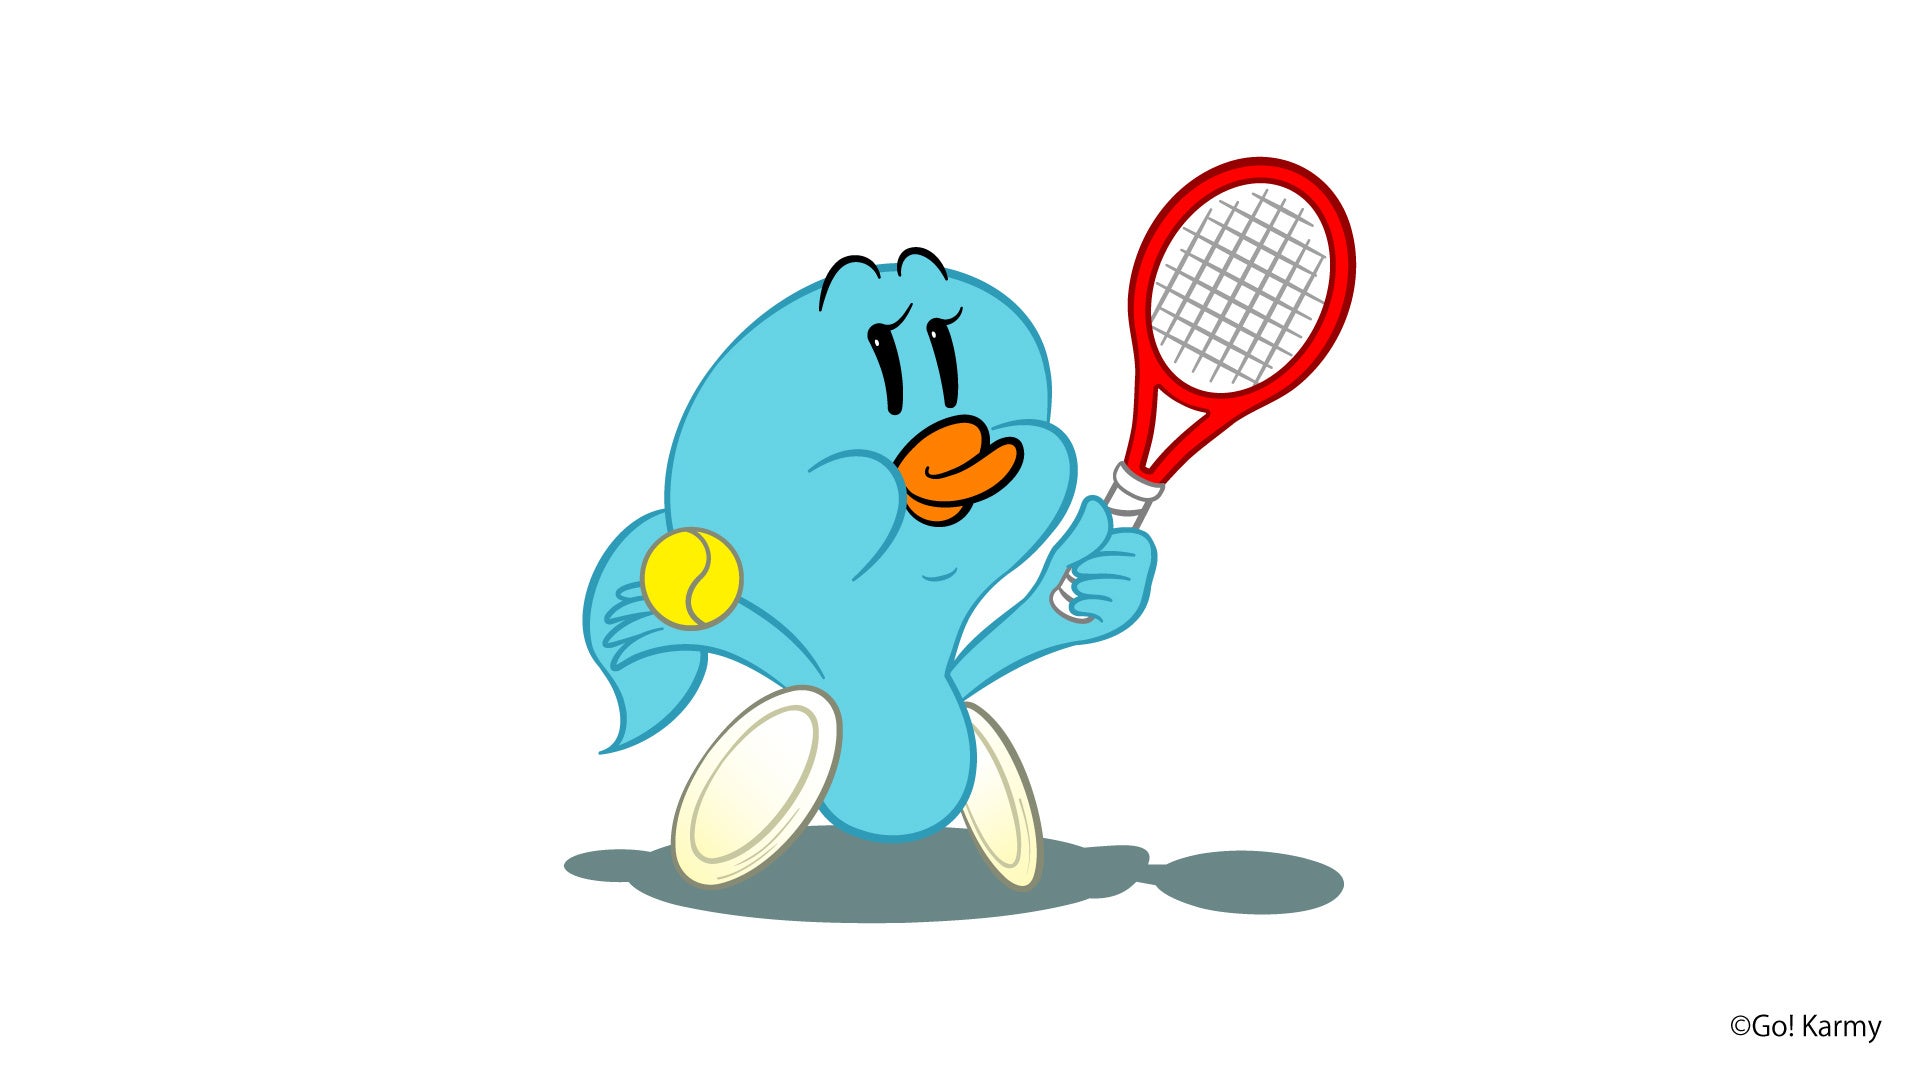 ギークピクチュアズとパートナーシップ契約する車いすテニスプレーヤー上地結衣選手のマスコットキャラクター「Go! カーミィ(Go! Karmy)」を開発